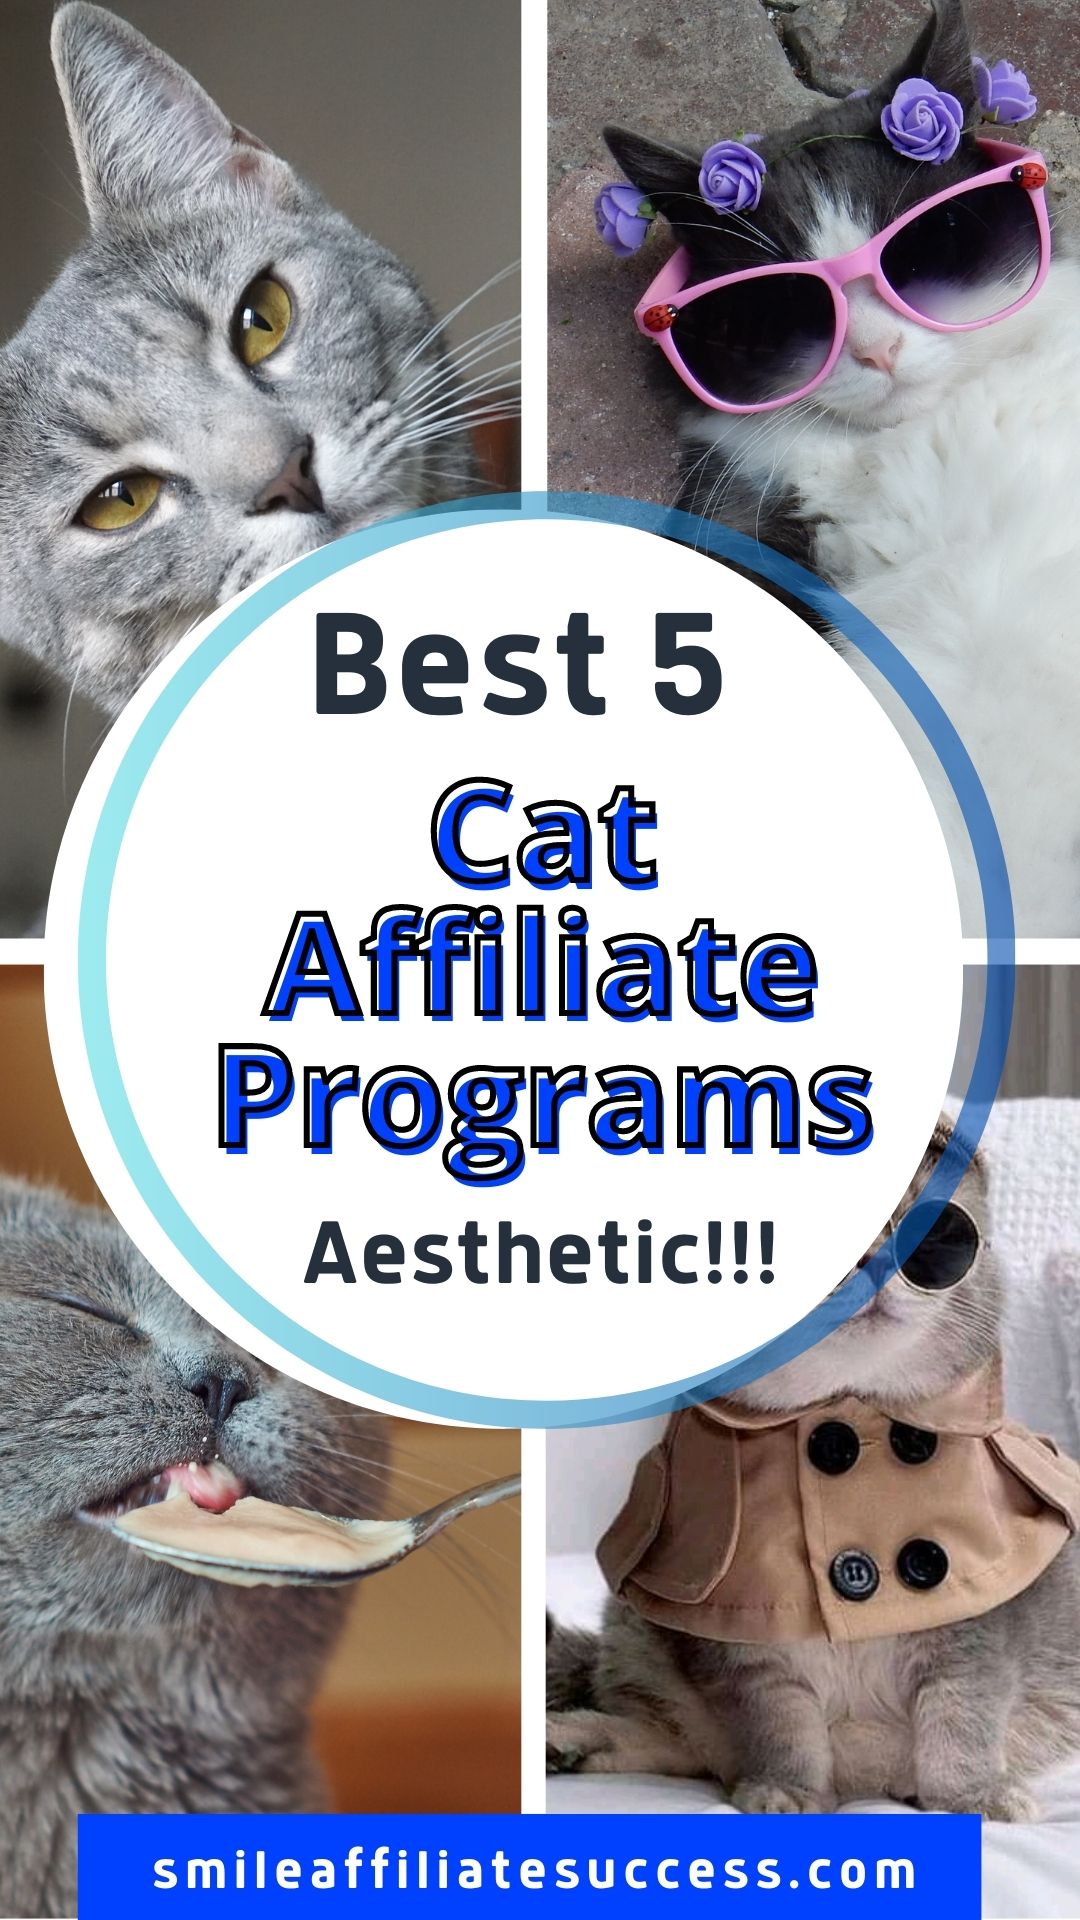 Best 5 Cat Affiliate Programs